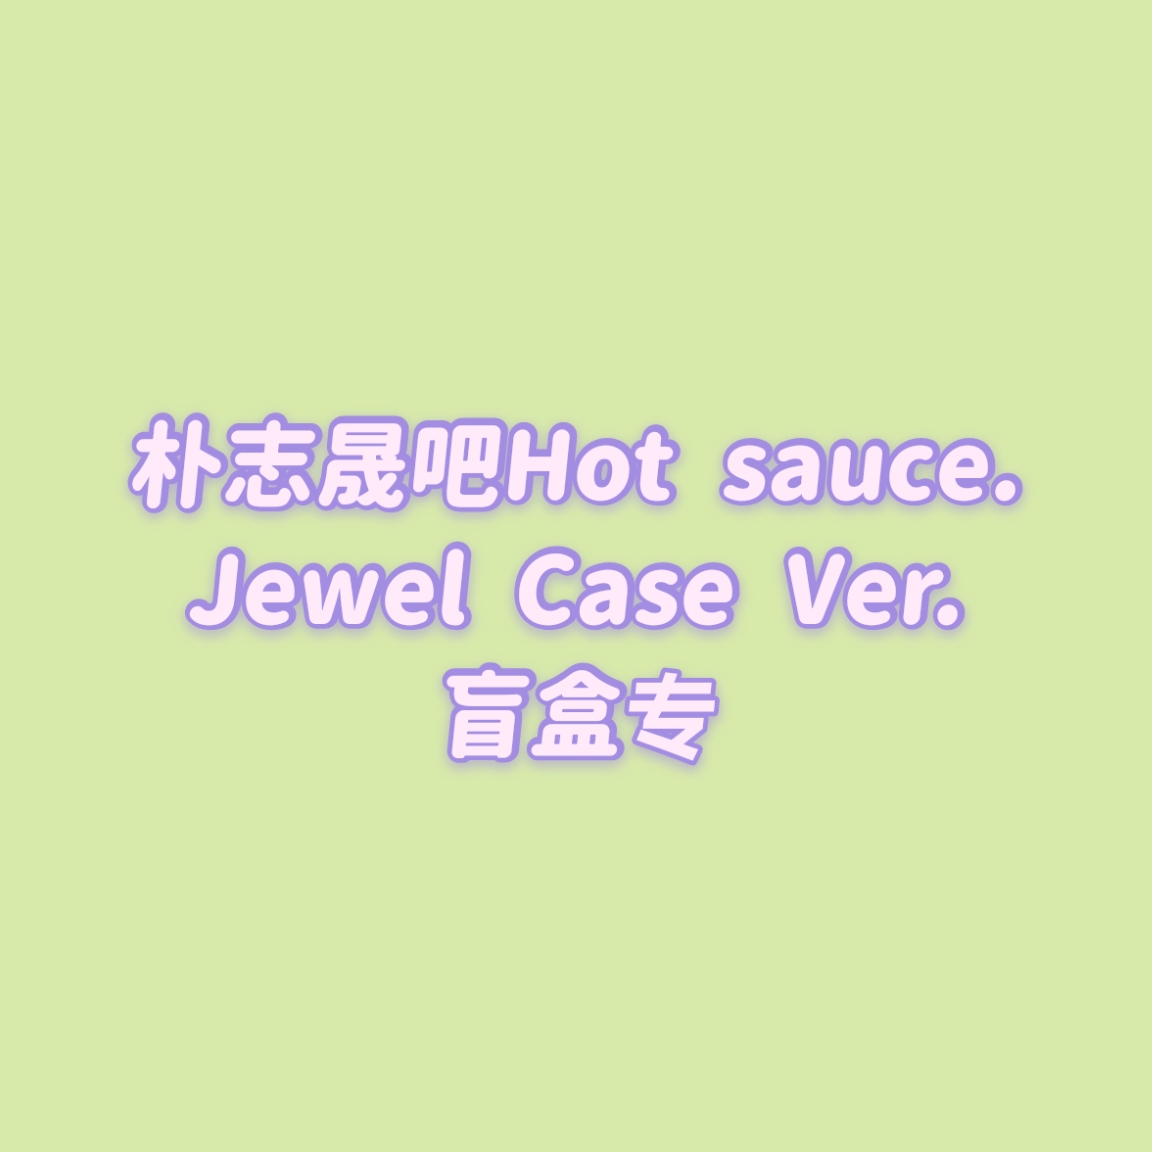 [全款 盲盒包邮专] [买多张发不同版本] NCT DREAM - Album Vol.1 [맛 (Hot Sauce)] (Jewel Case Ver.) (随机版本)_朴志晟吧_ParkJiSungBar